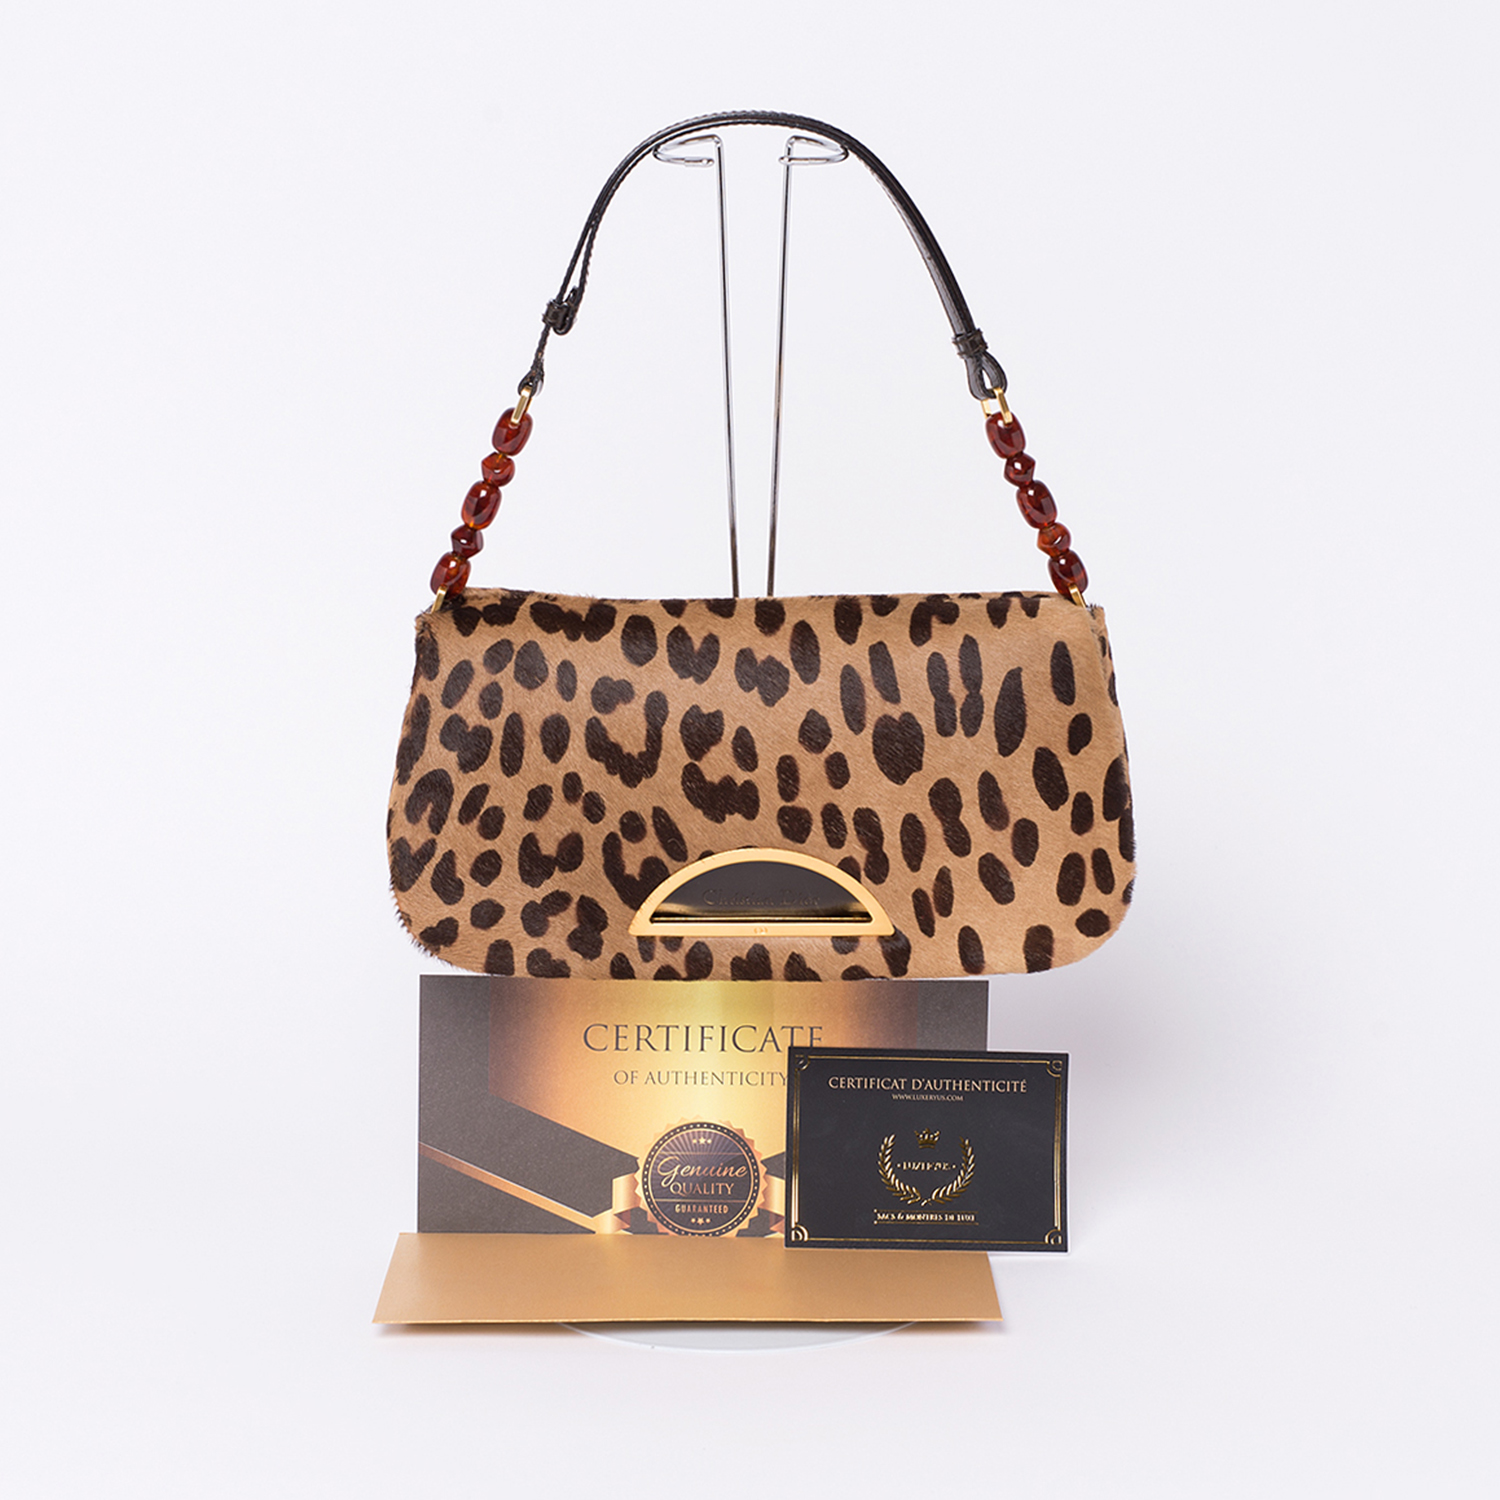 Ravissant Sac Christian Dior Malice Authentique d'occasion en poulain imprimé façon léopard